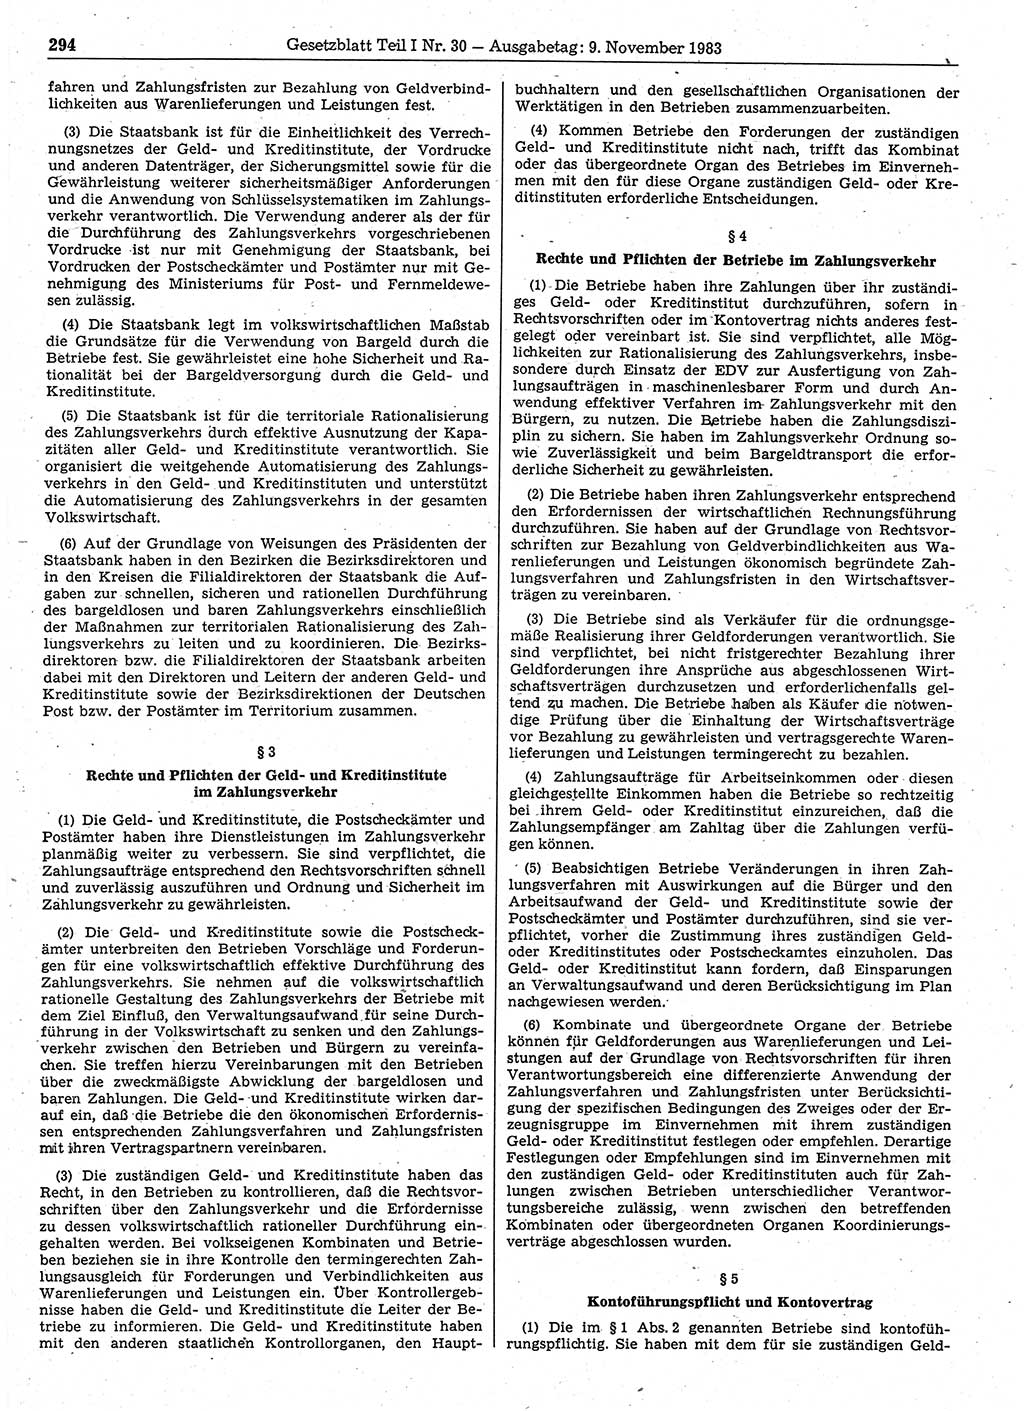 Gesetzblatt (GBl.) der Deutschen Demokratischen Republik (DDR) Teil Ⅰ 1983, Seite 294 (GBl. DDR Ⅰ 1983, S. 294)